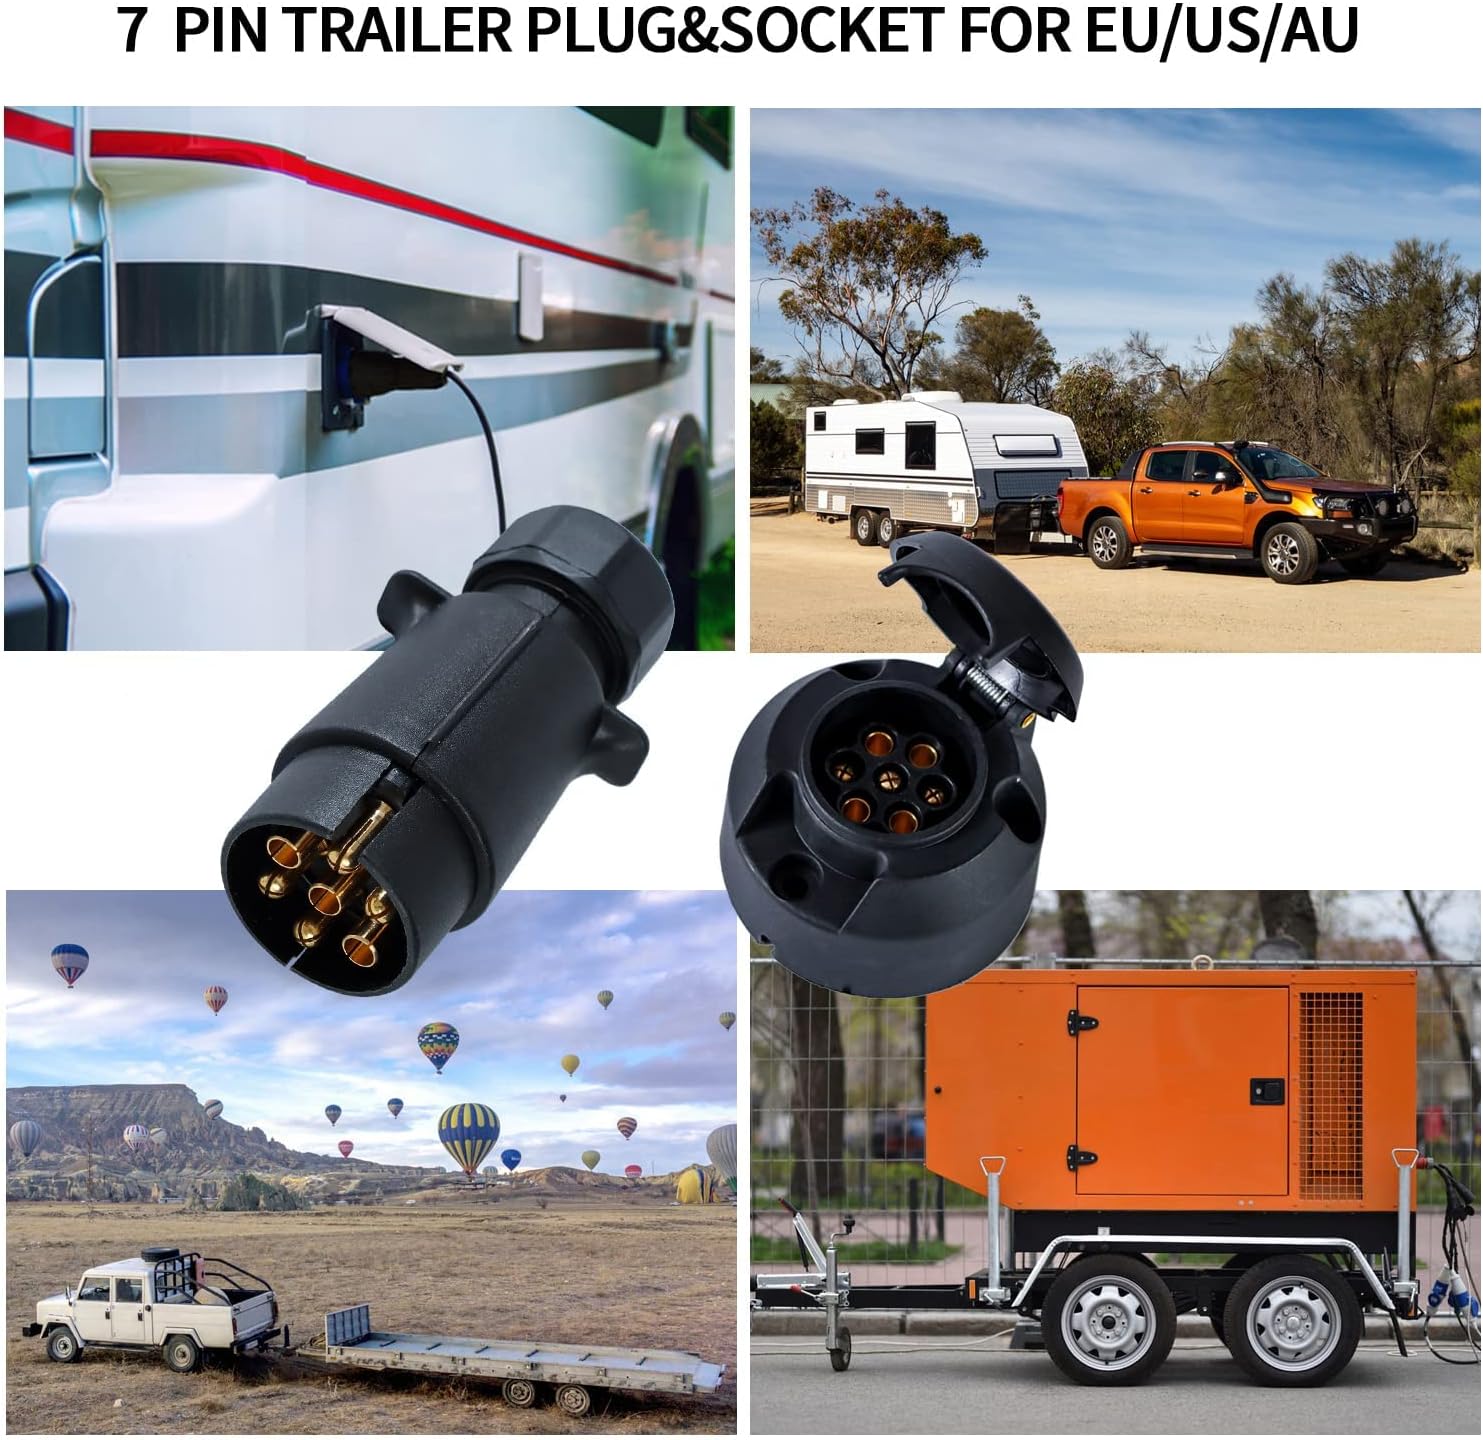 12V Trailer Plug and Socket Kit, 7 Pin Trailer Plug and 7 Pin Trailer Socket Connector Waterproof